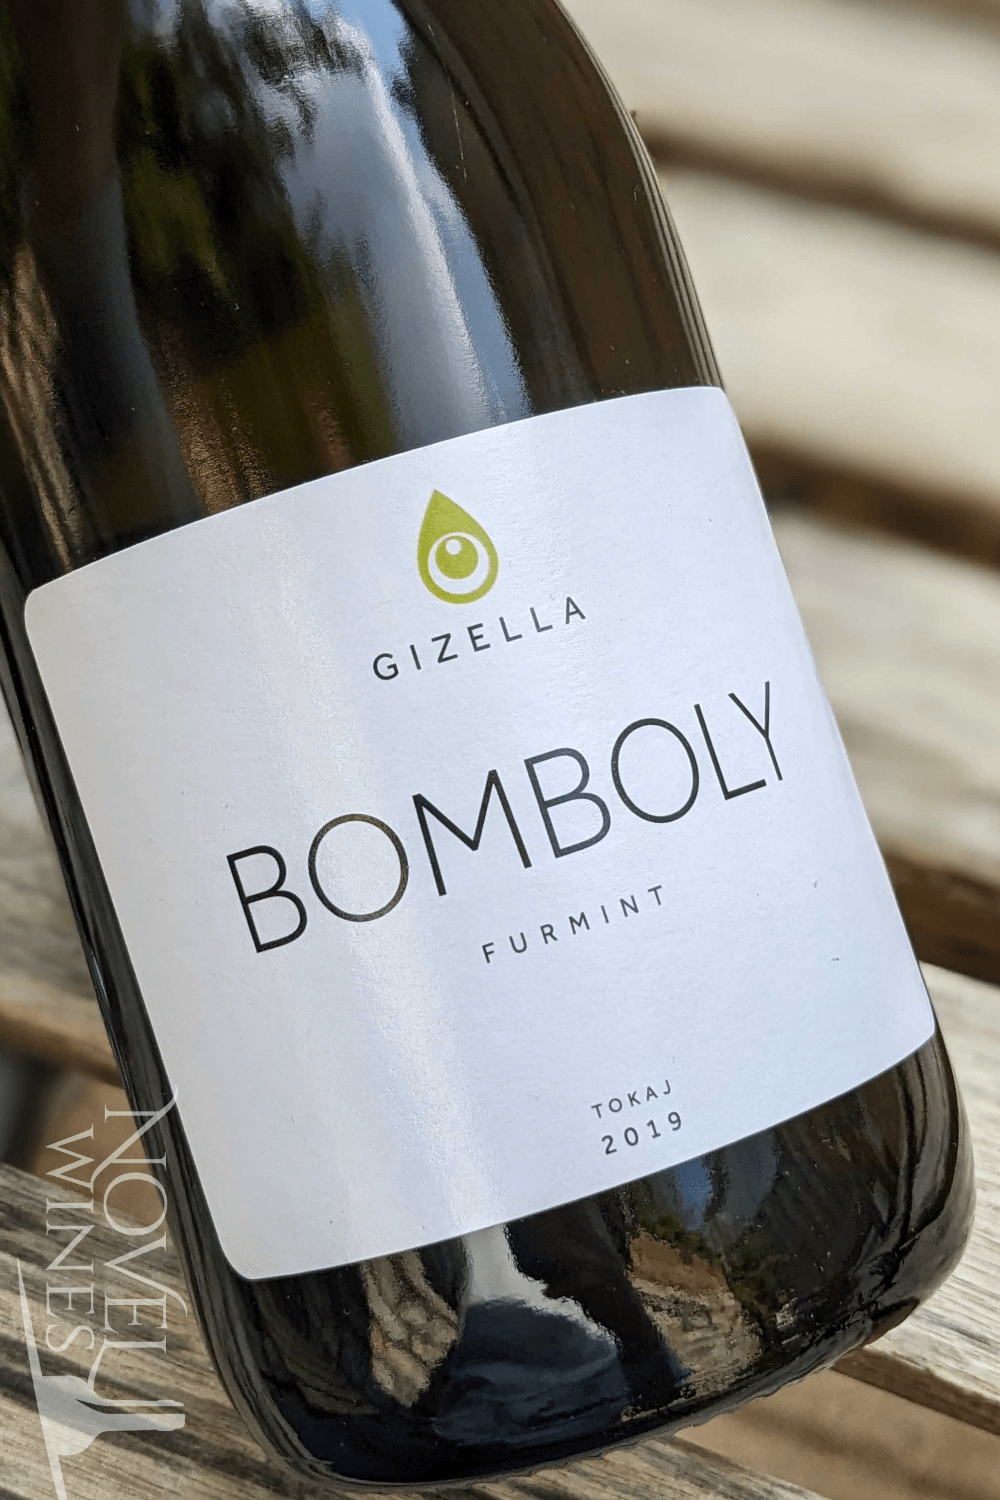 Gizella Pince White Wine Gizella Bomboly Single Vineyard Furmint 2019, Hungary